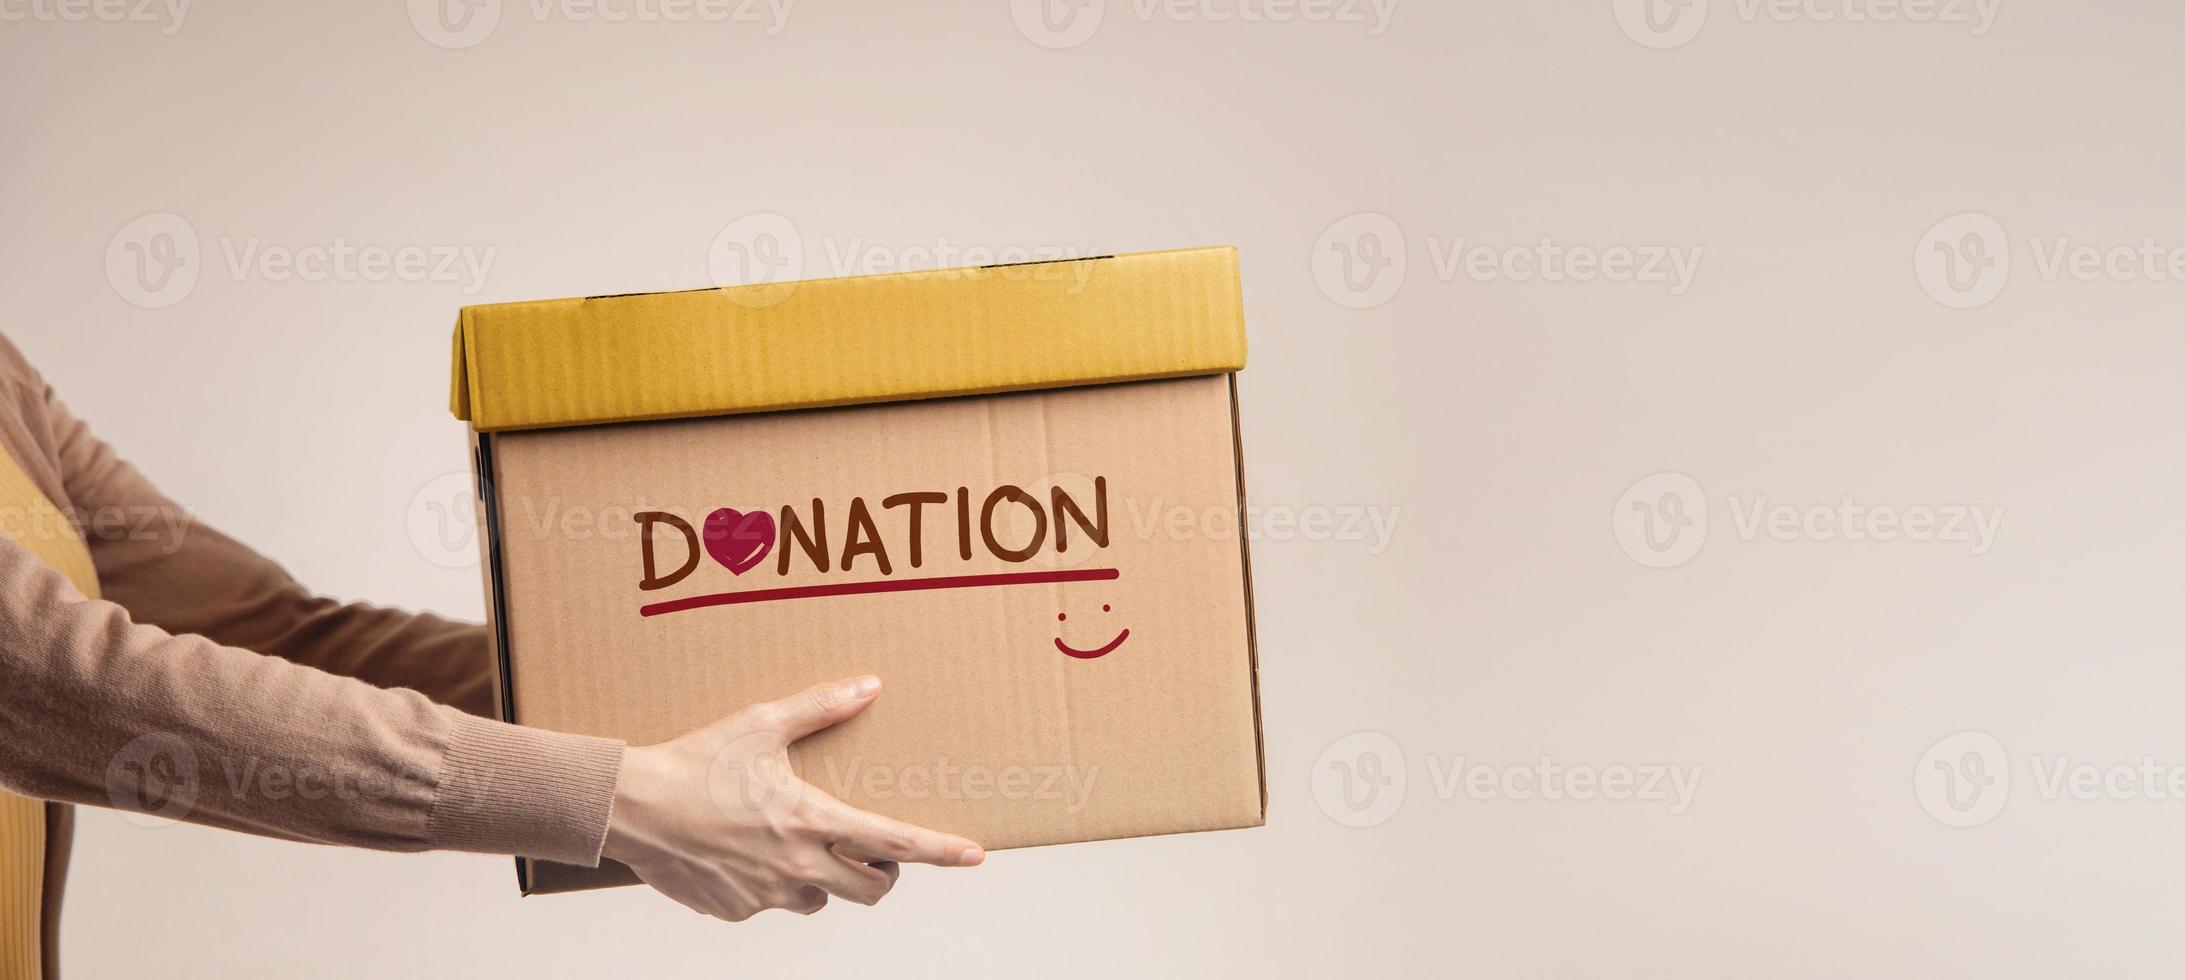 donation begrepp. kvinna med låda av saker för donera med donation märka, leende och hjärta. stående mot de walll. sida se foto